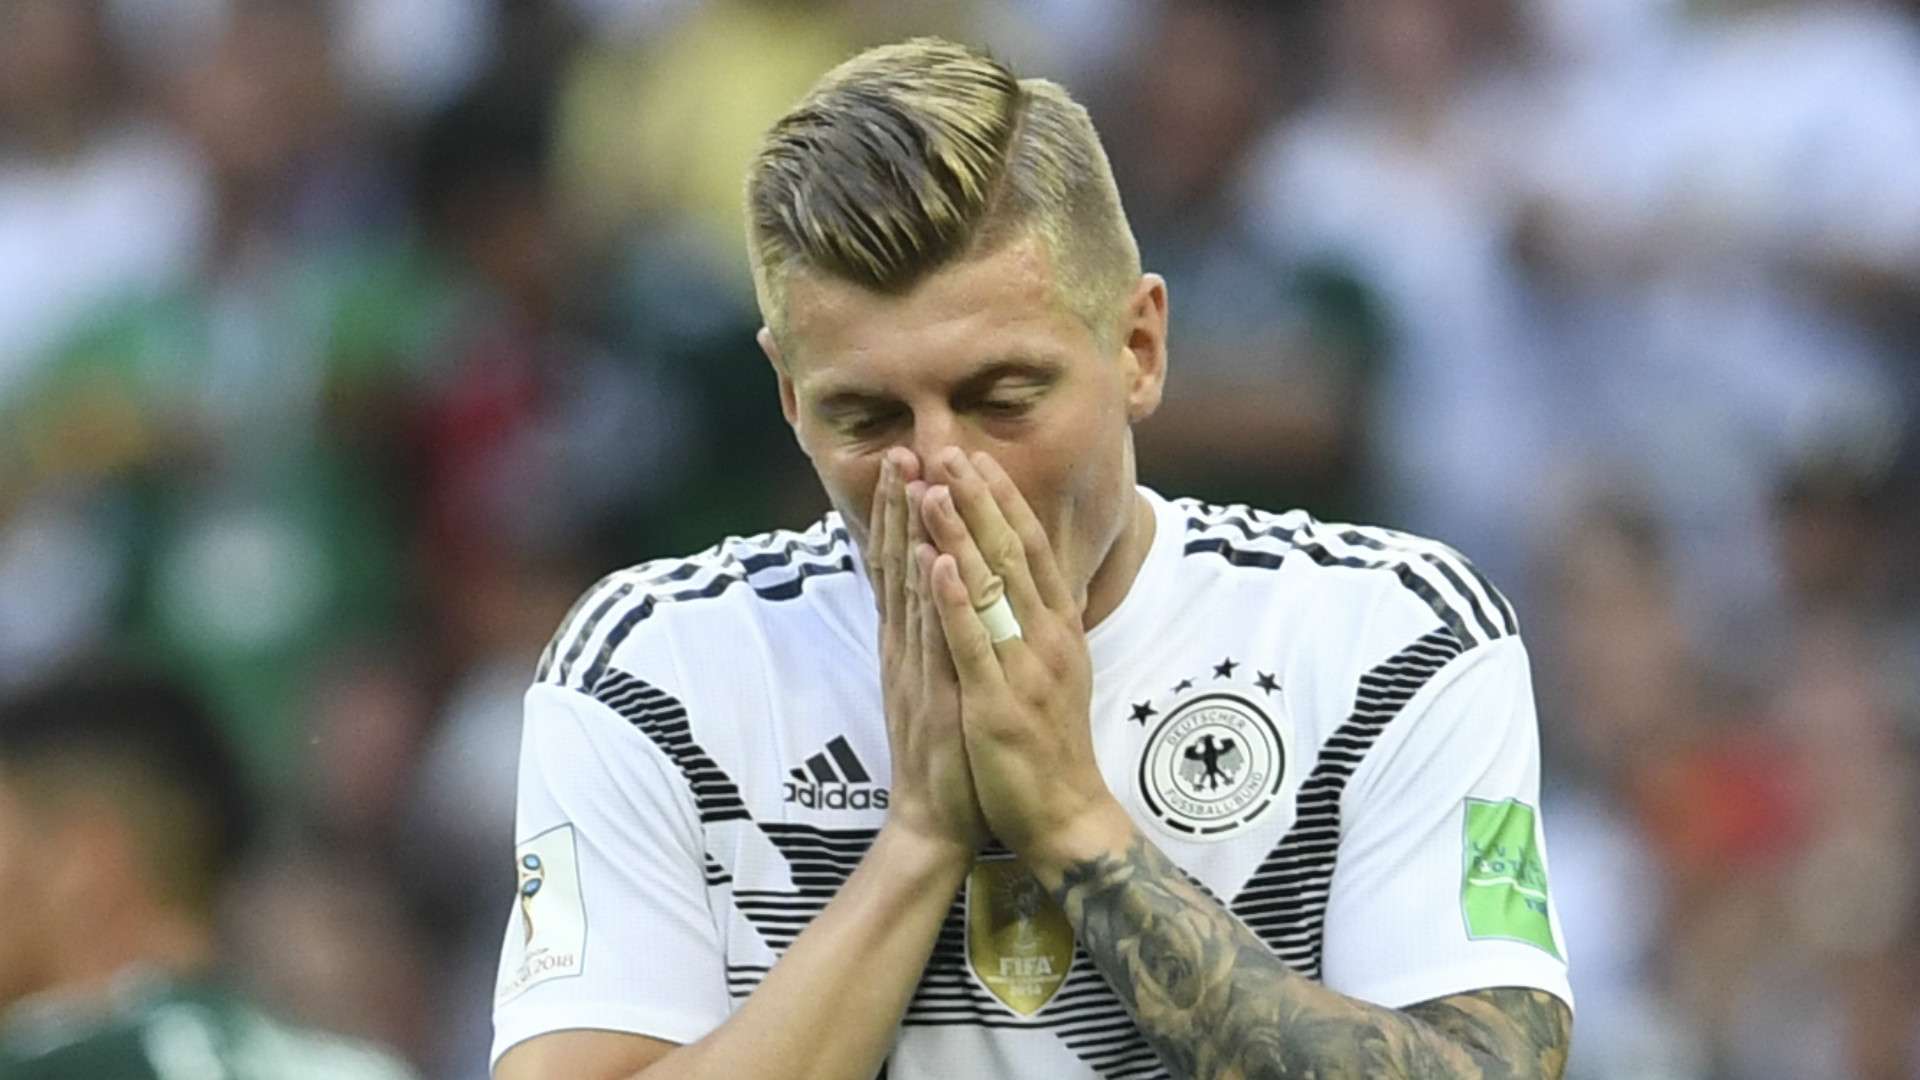 Elimination des Allemands : Toni Kroos vers la retraite internationale